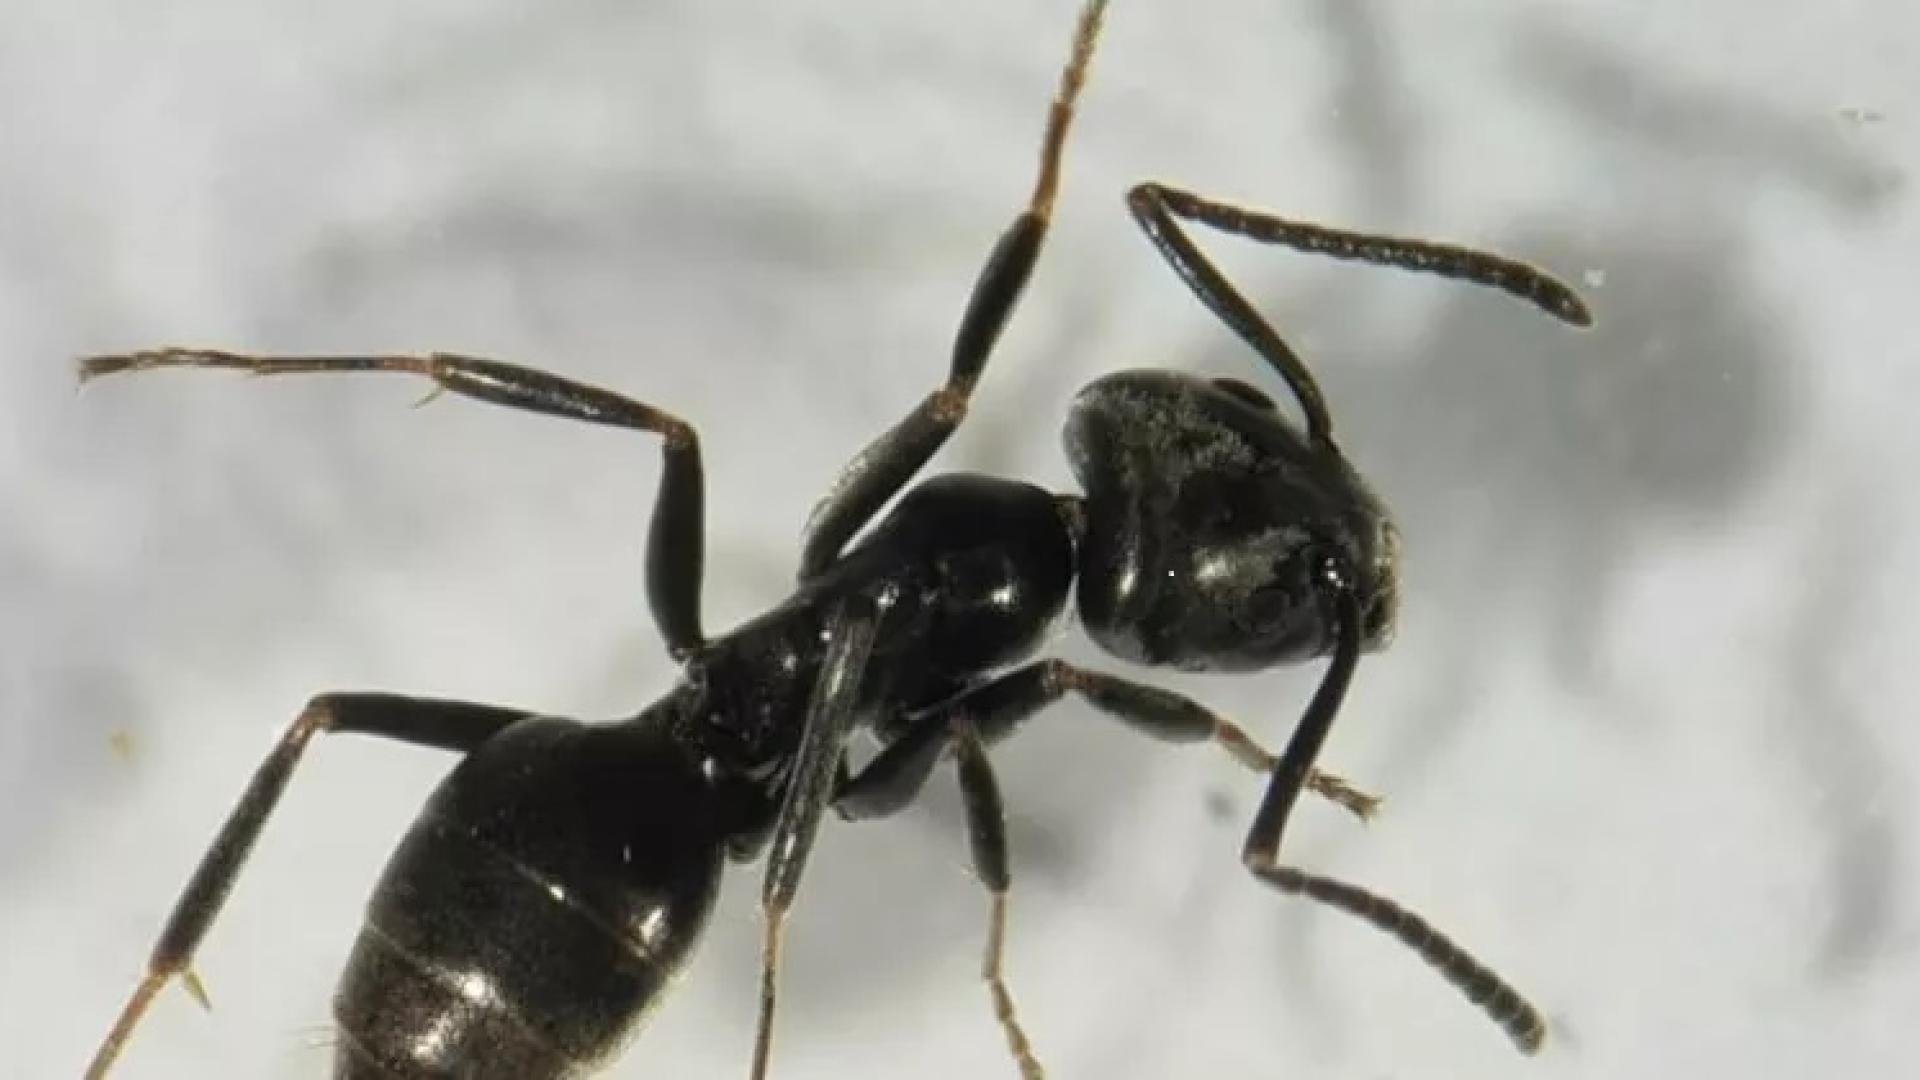 Een zwarte mier van bovenaf gezien op een wit oppervlak